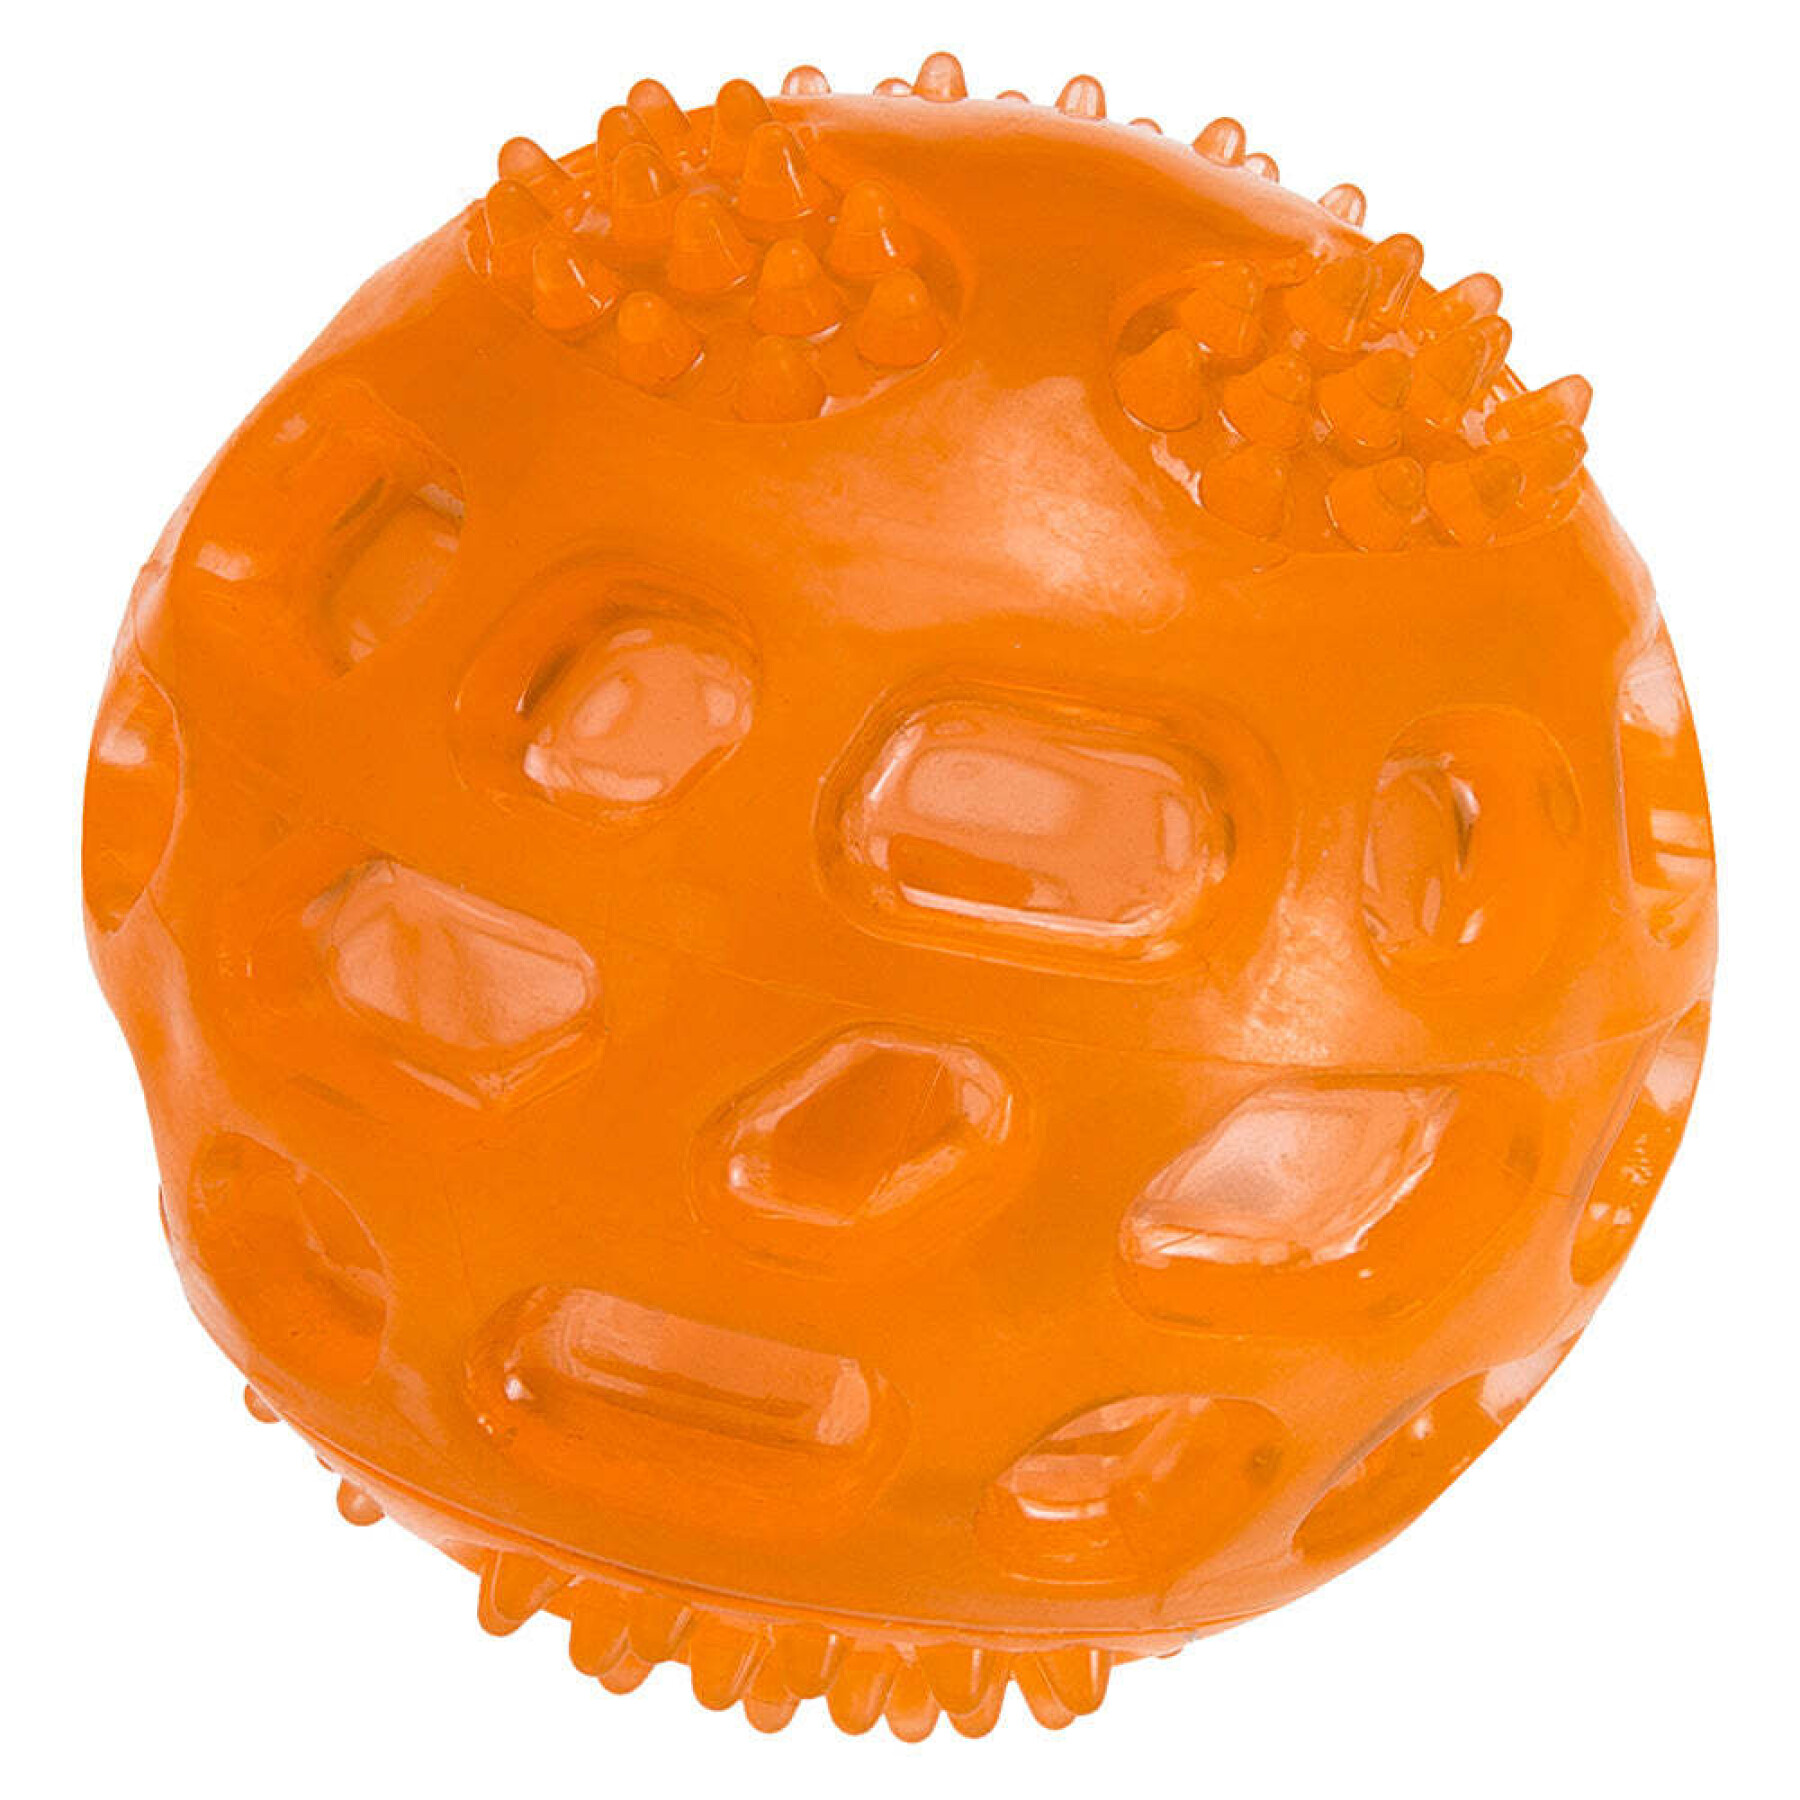 Dog toy ball Ferplast PA 6411